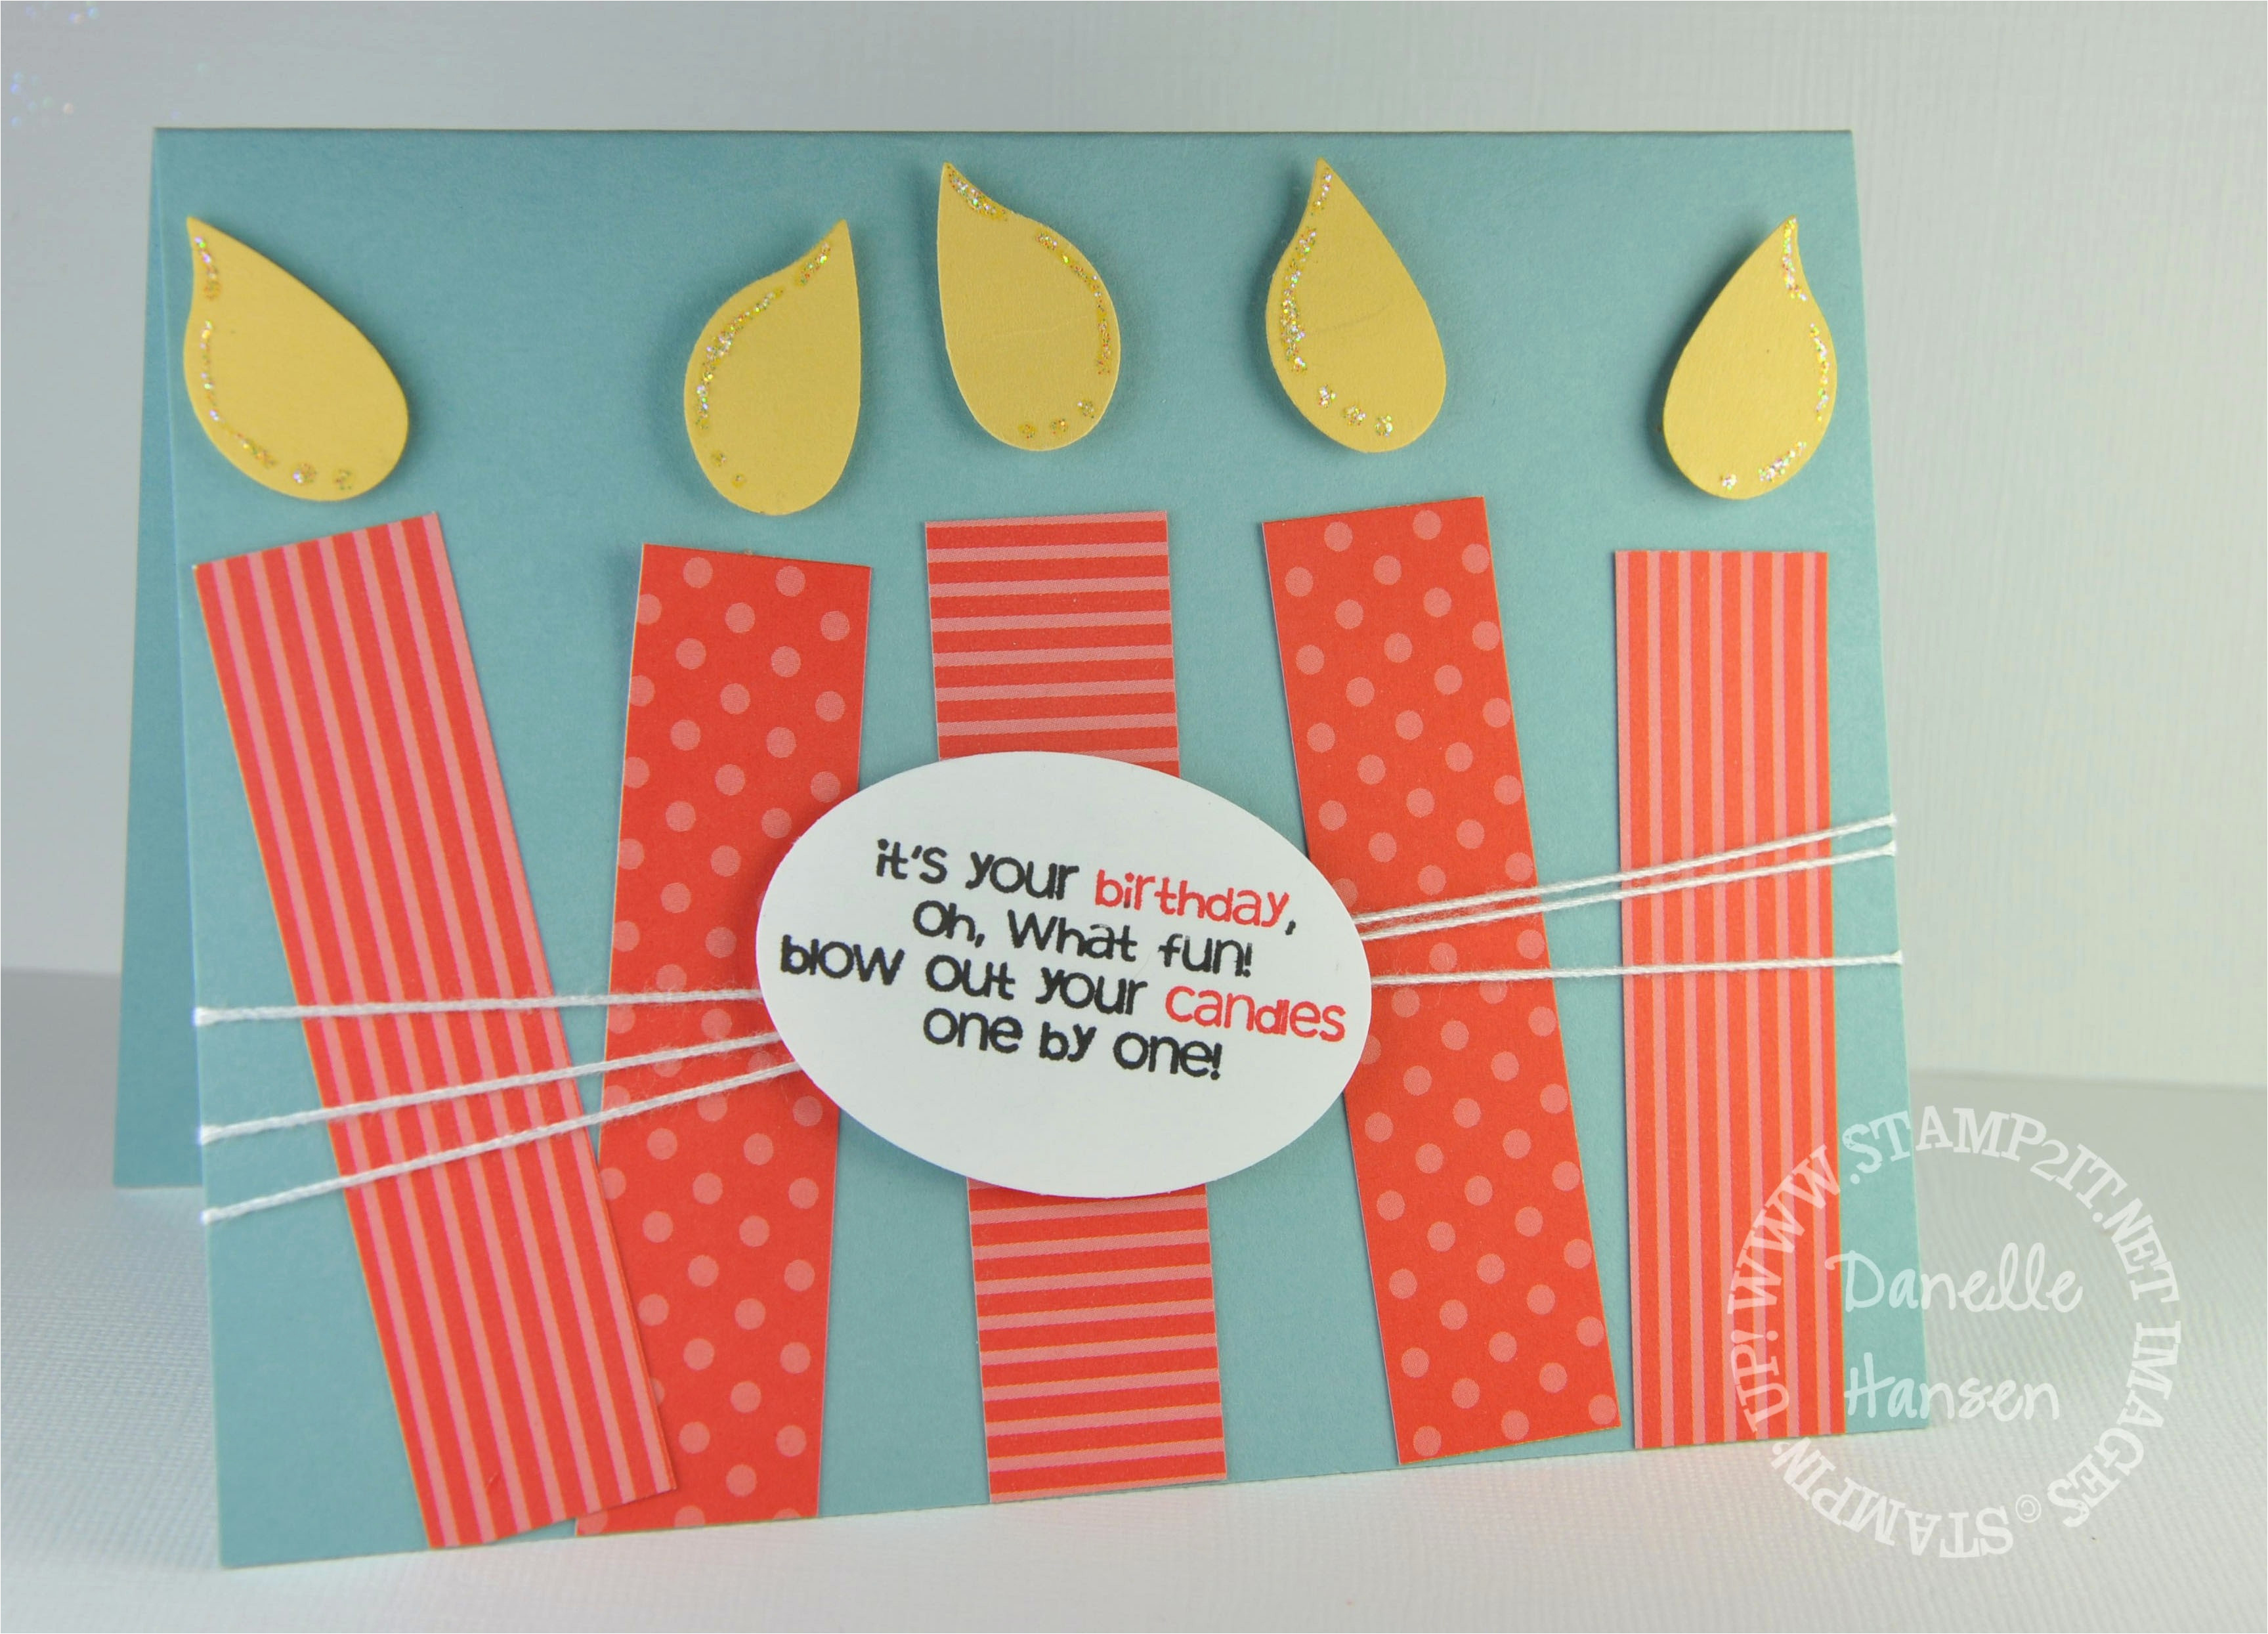 Creative Ideas For Handmade Birthday Cards Diy Birthday Cards For Husband Creative Handmade Birthday Card Ideas